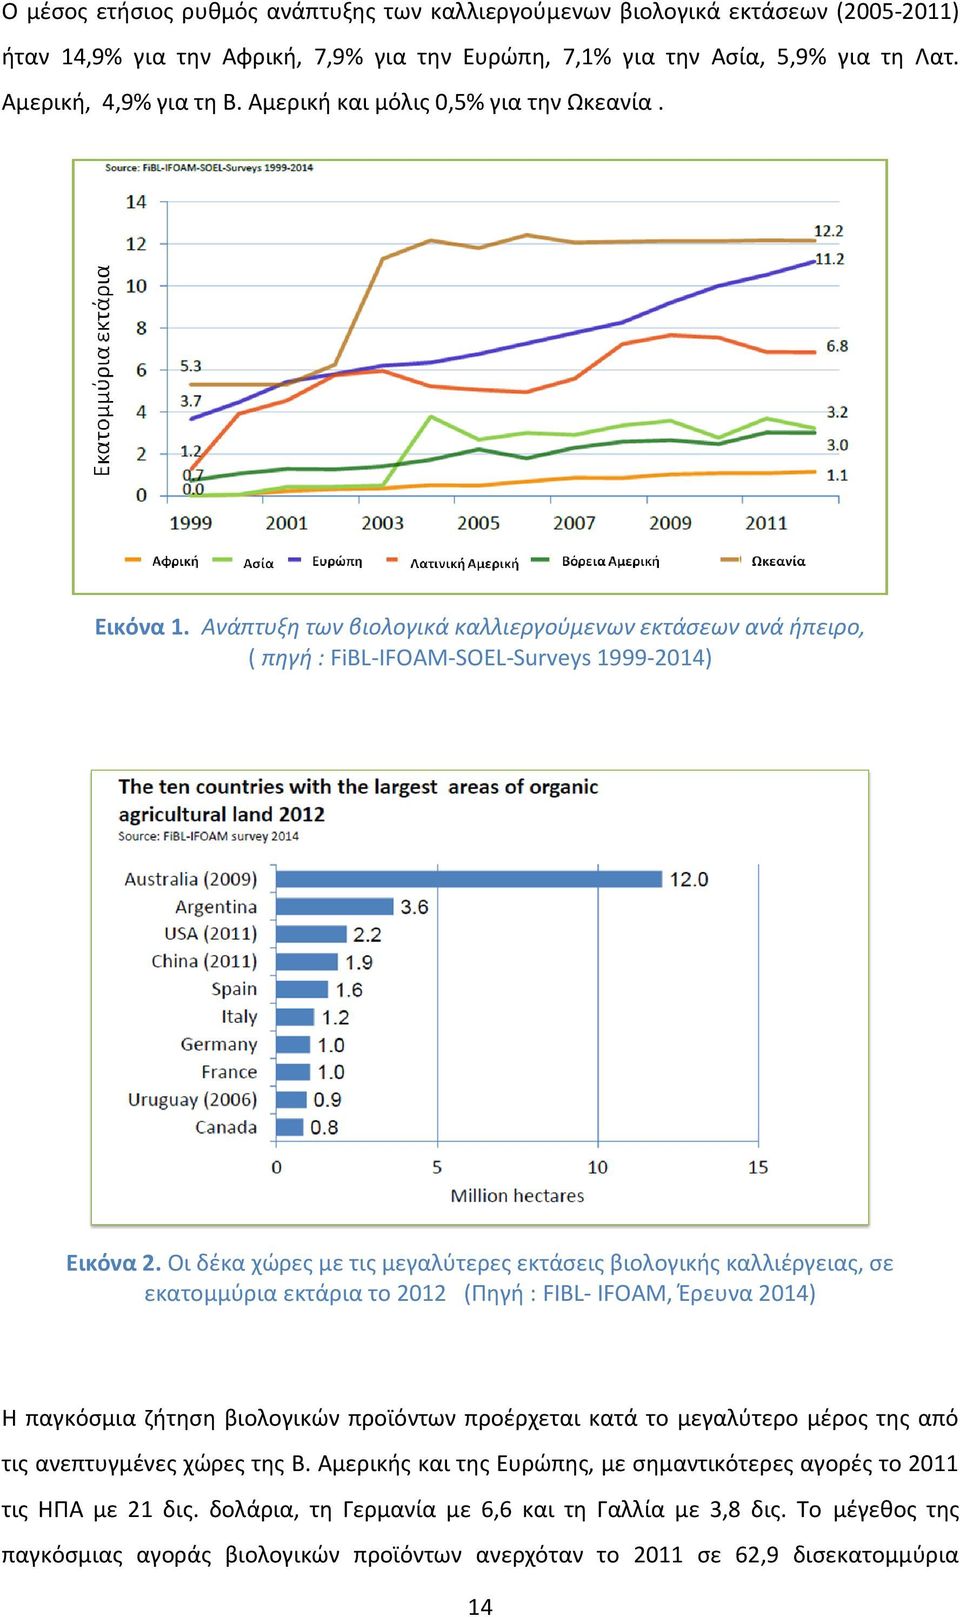 Οι δέκα χώρες με τις μεγαλύτερες εκτάσεις βιολογικής καλλιέργειας, σε εκατομμύρια εκτάρια το 2012 (Πηγή : FIBL- IFOAM, Έρευνα 2014) Η παγκόσμια ζήτηση βιολογικών προϊόντων προέρχεται κατά το